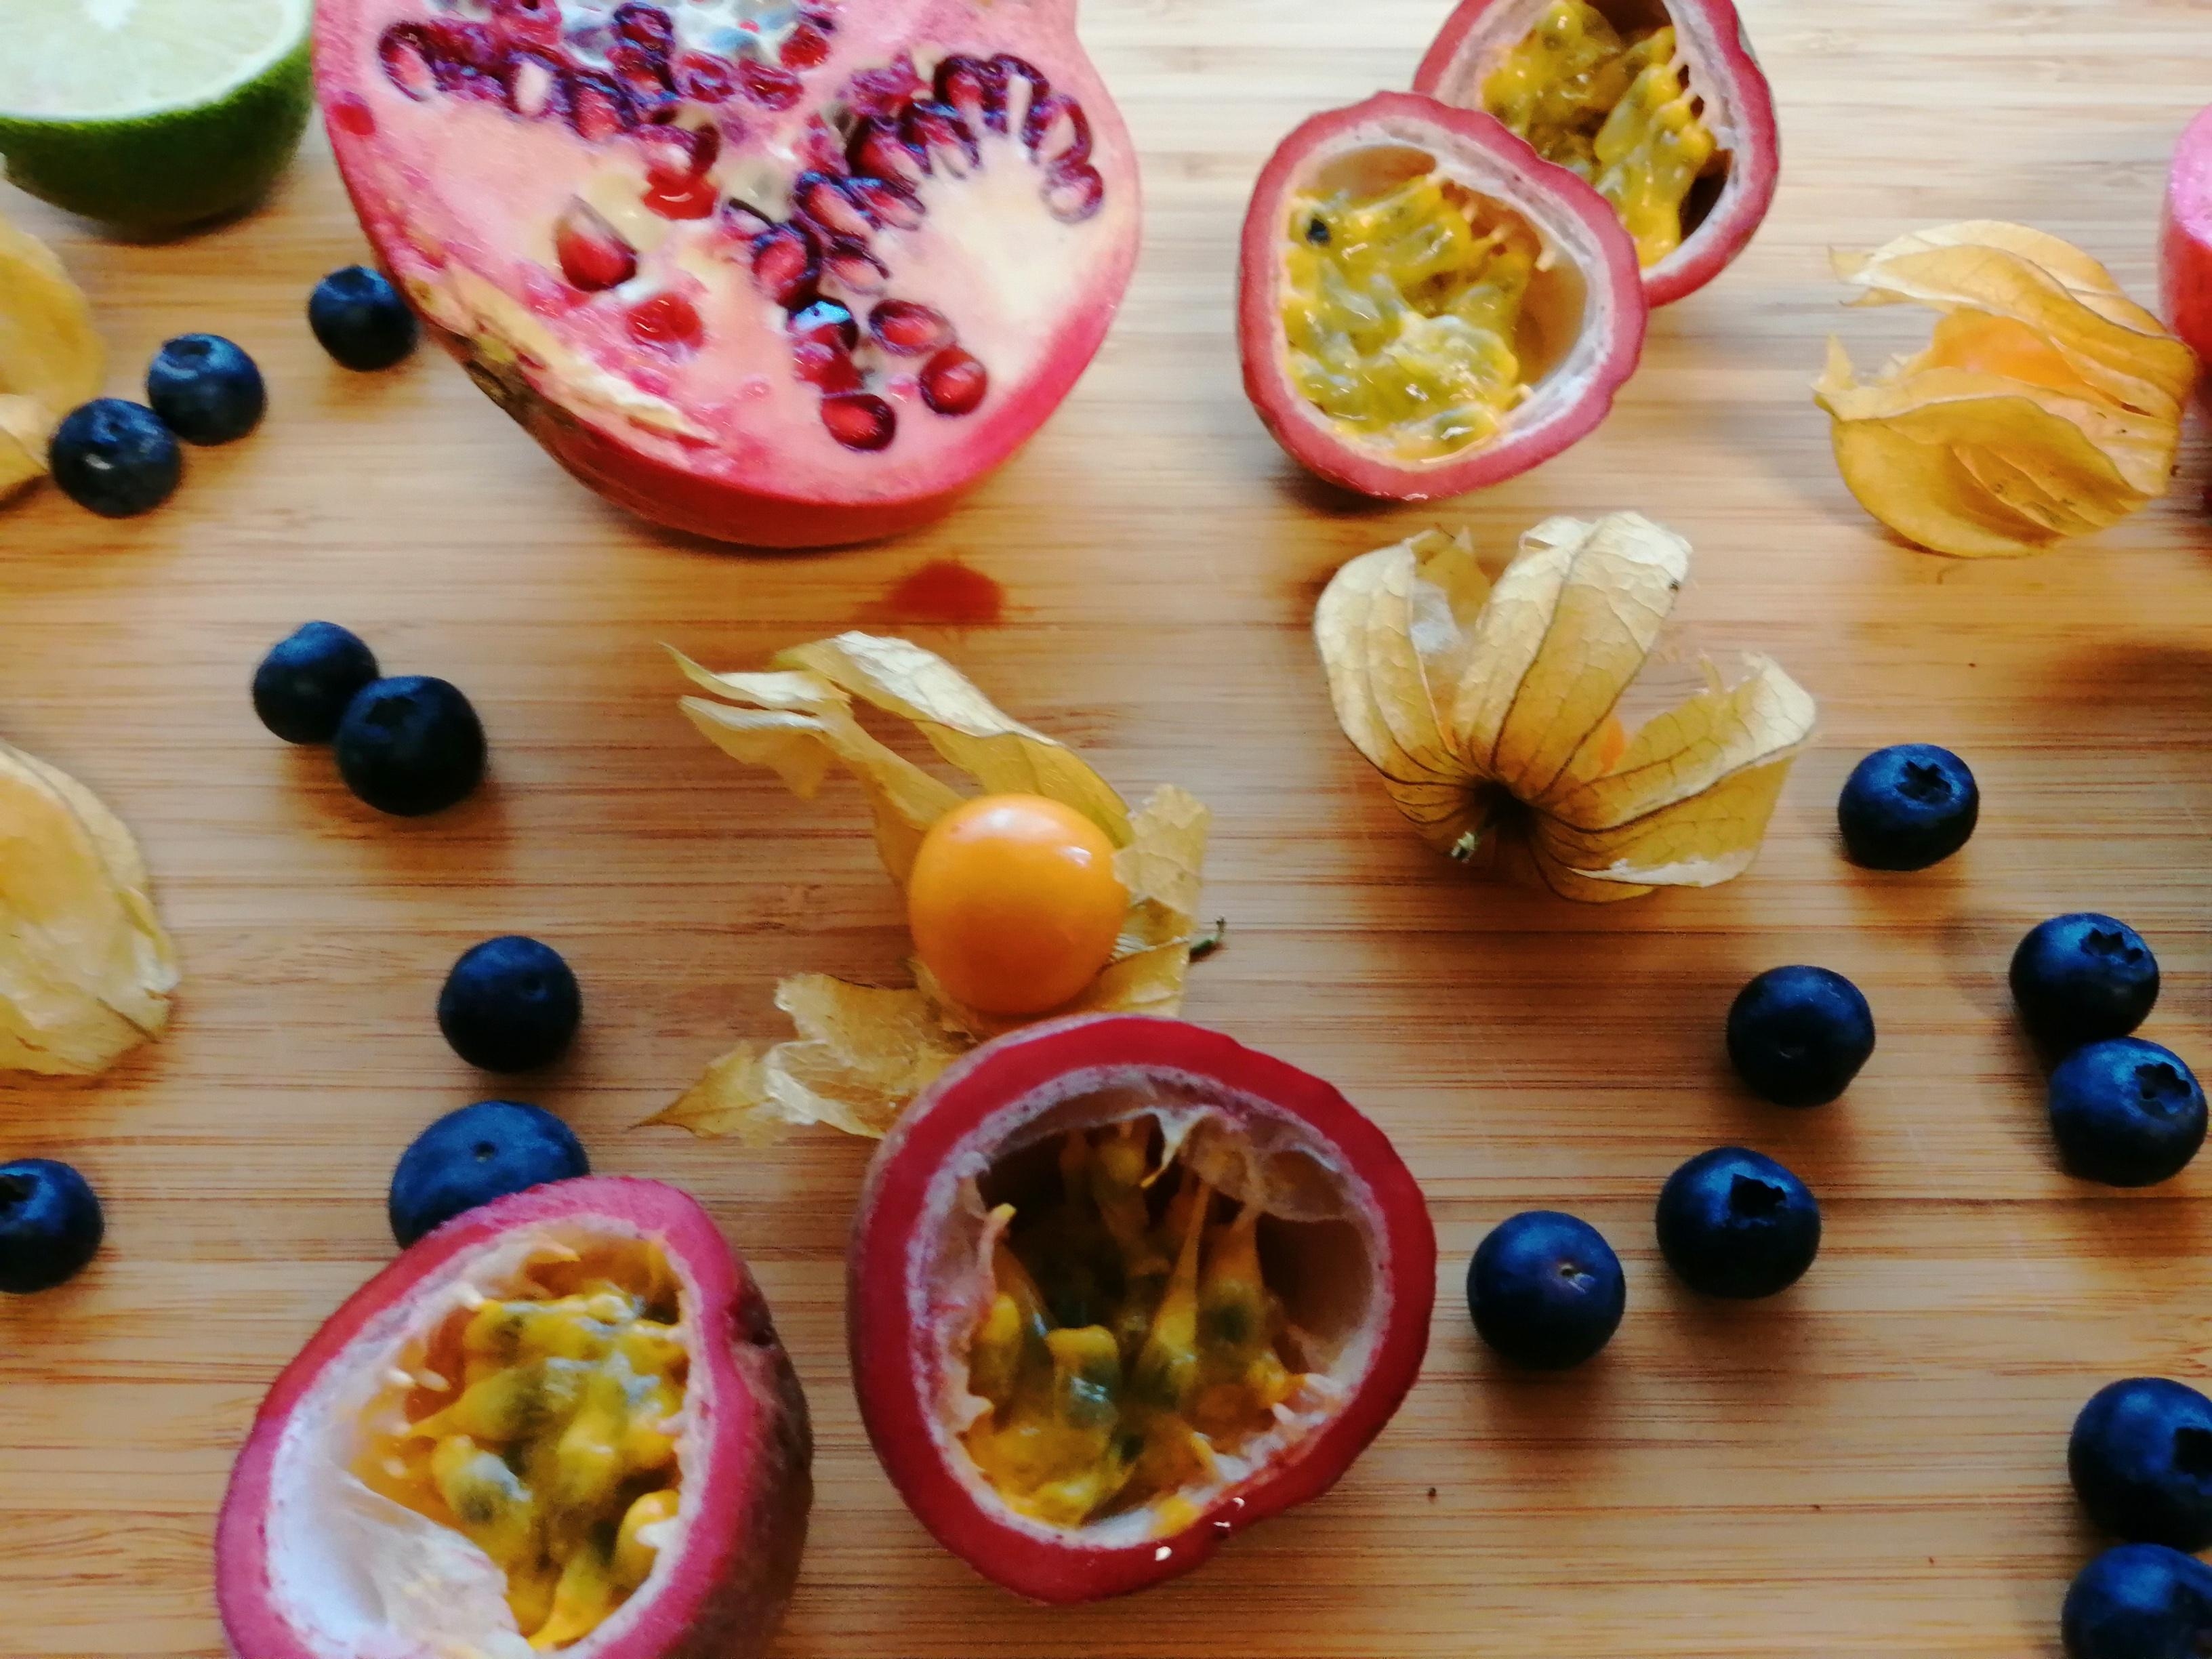 Es gibt nichts leckereres als exotische Früchte.
#physalis #granatapfel #heidelbeeren #limetten